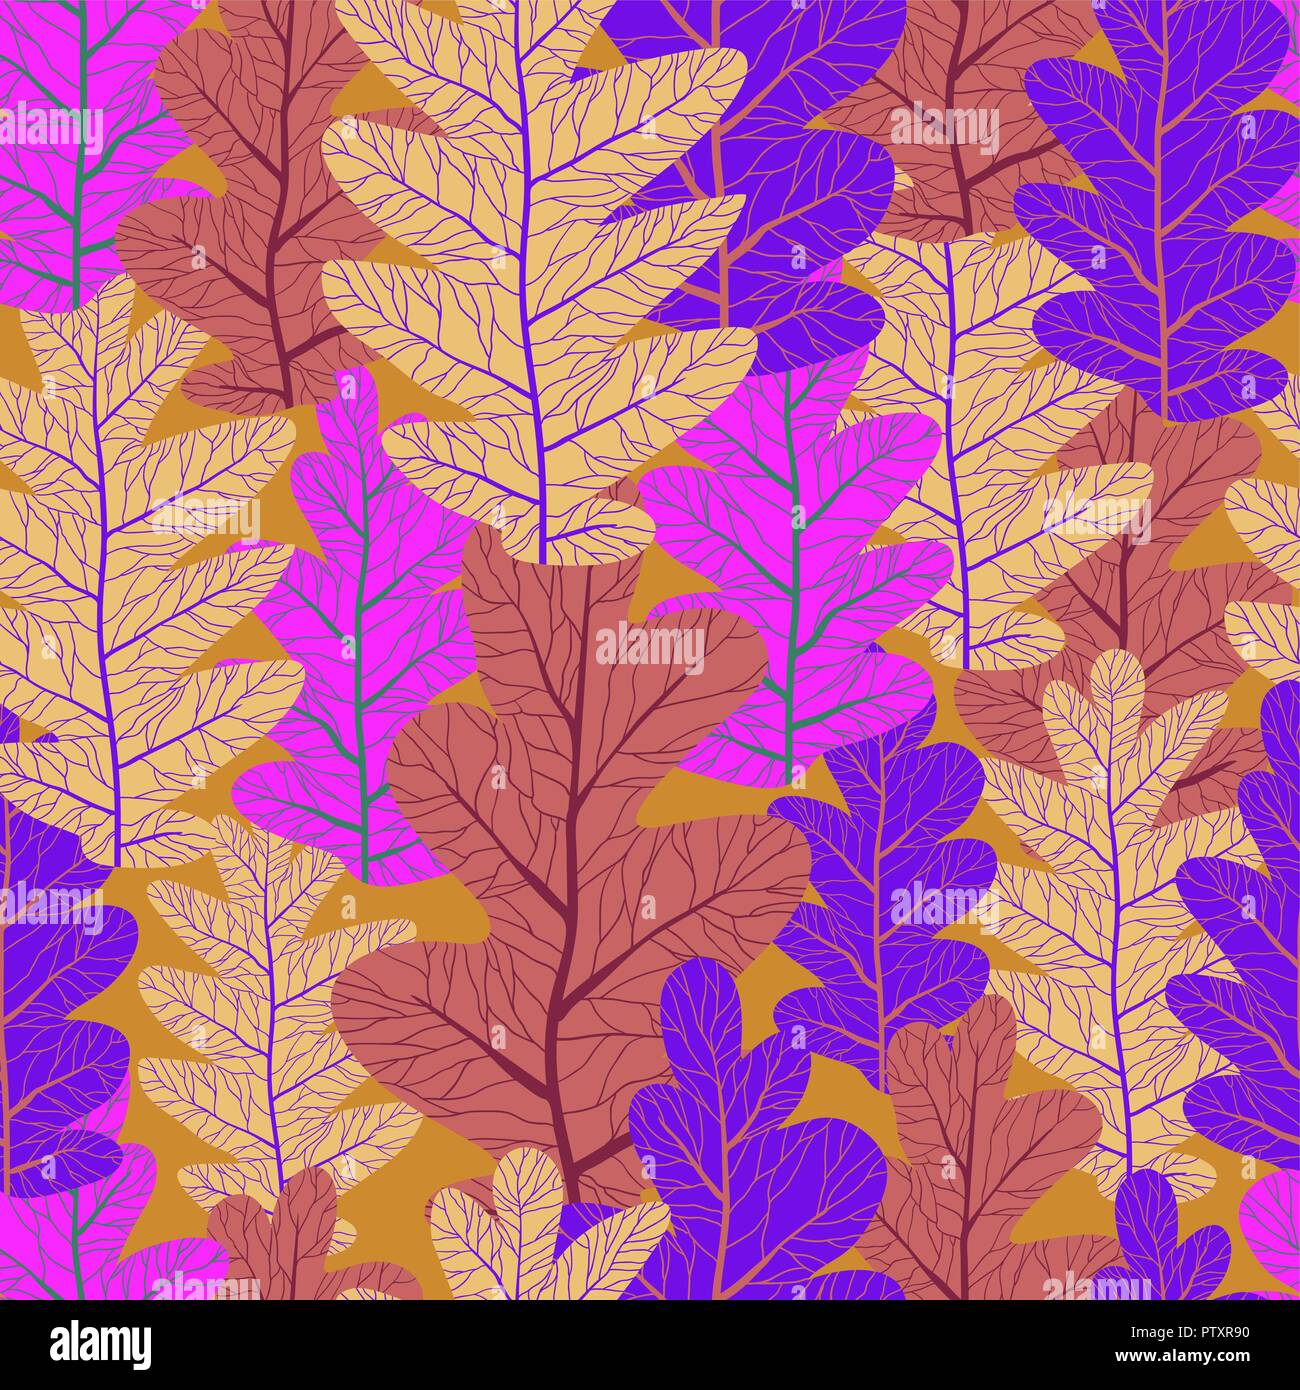 Violett Blätter Muster Stock Vektor